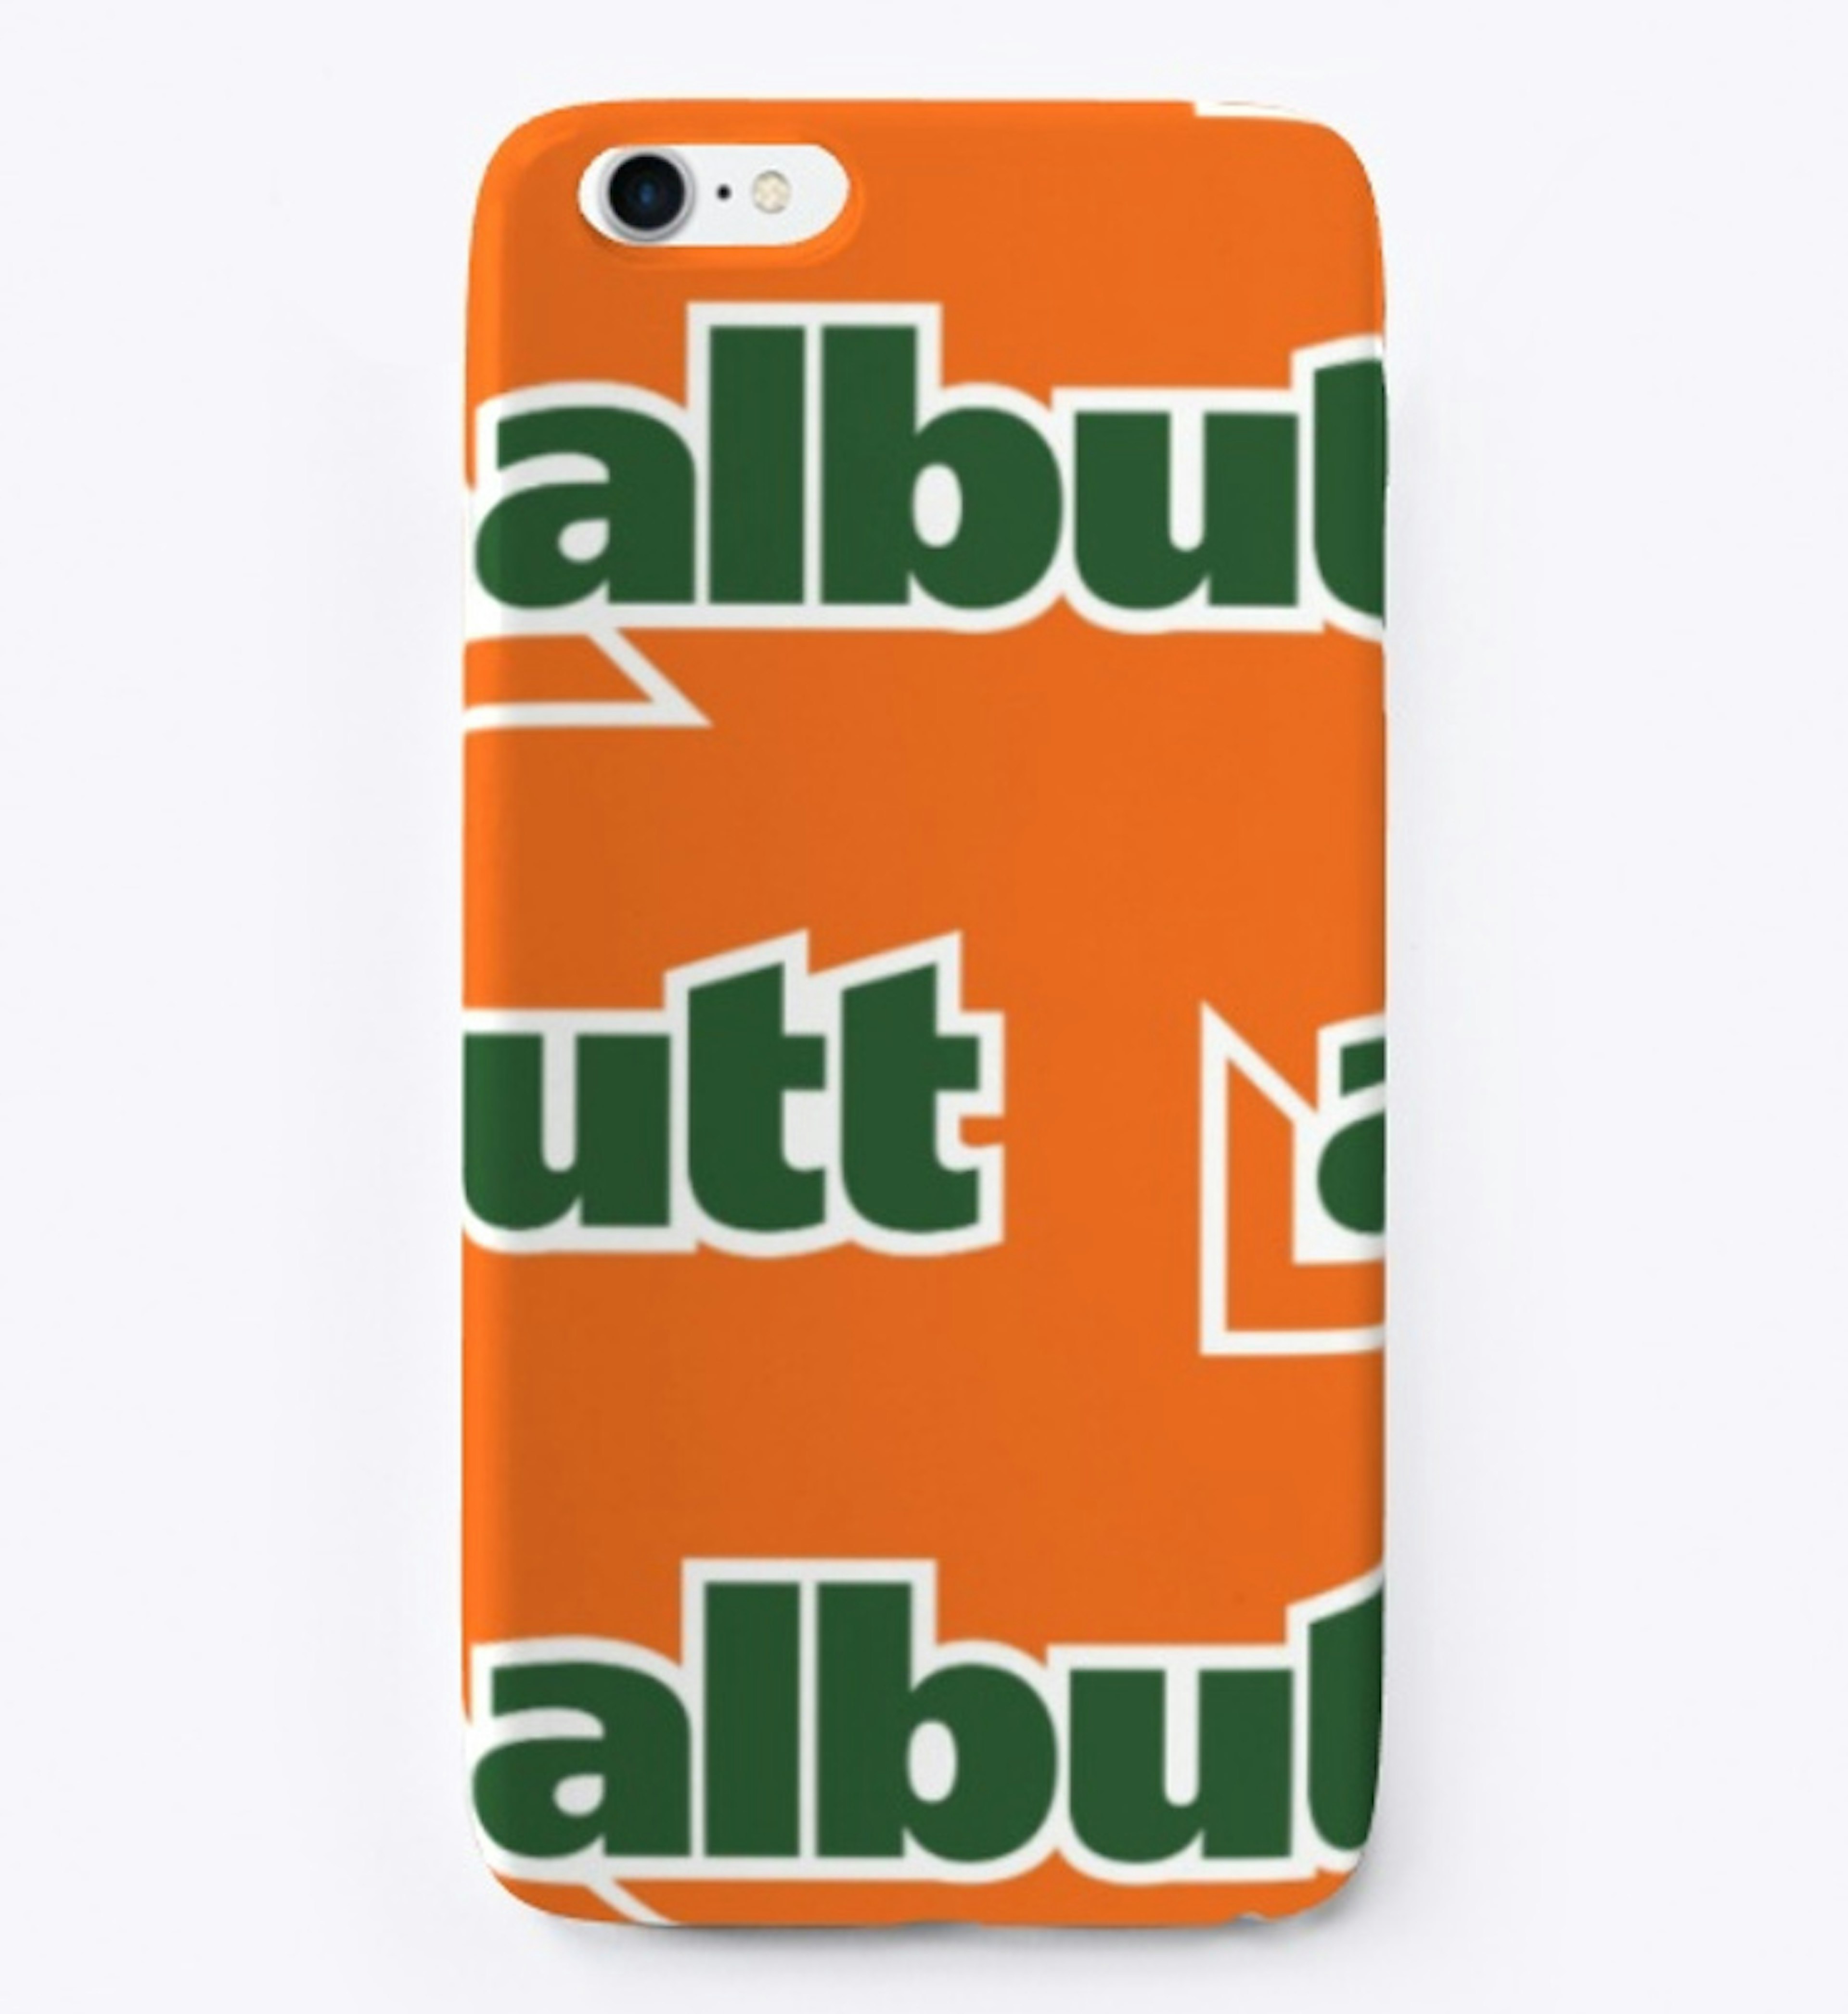 Albutt Attachments Logo Iphone Case